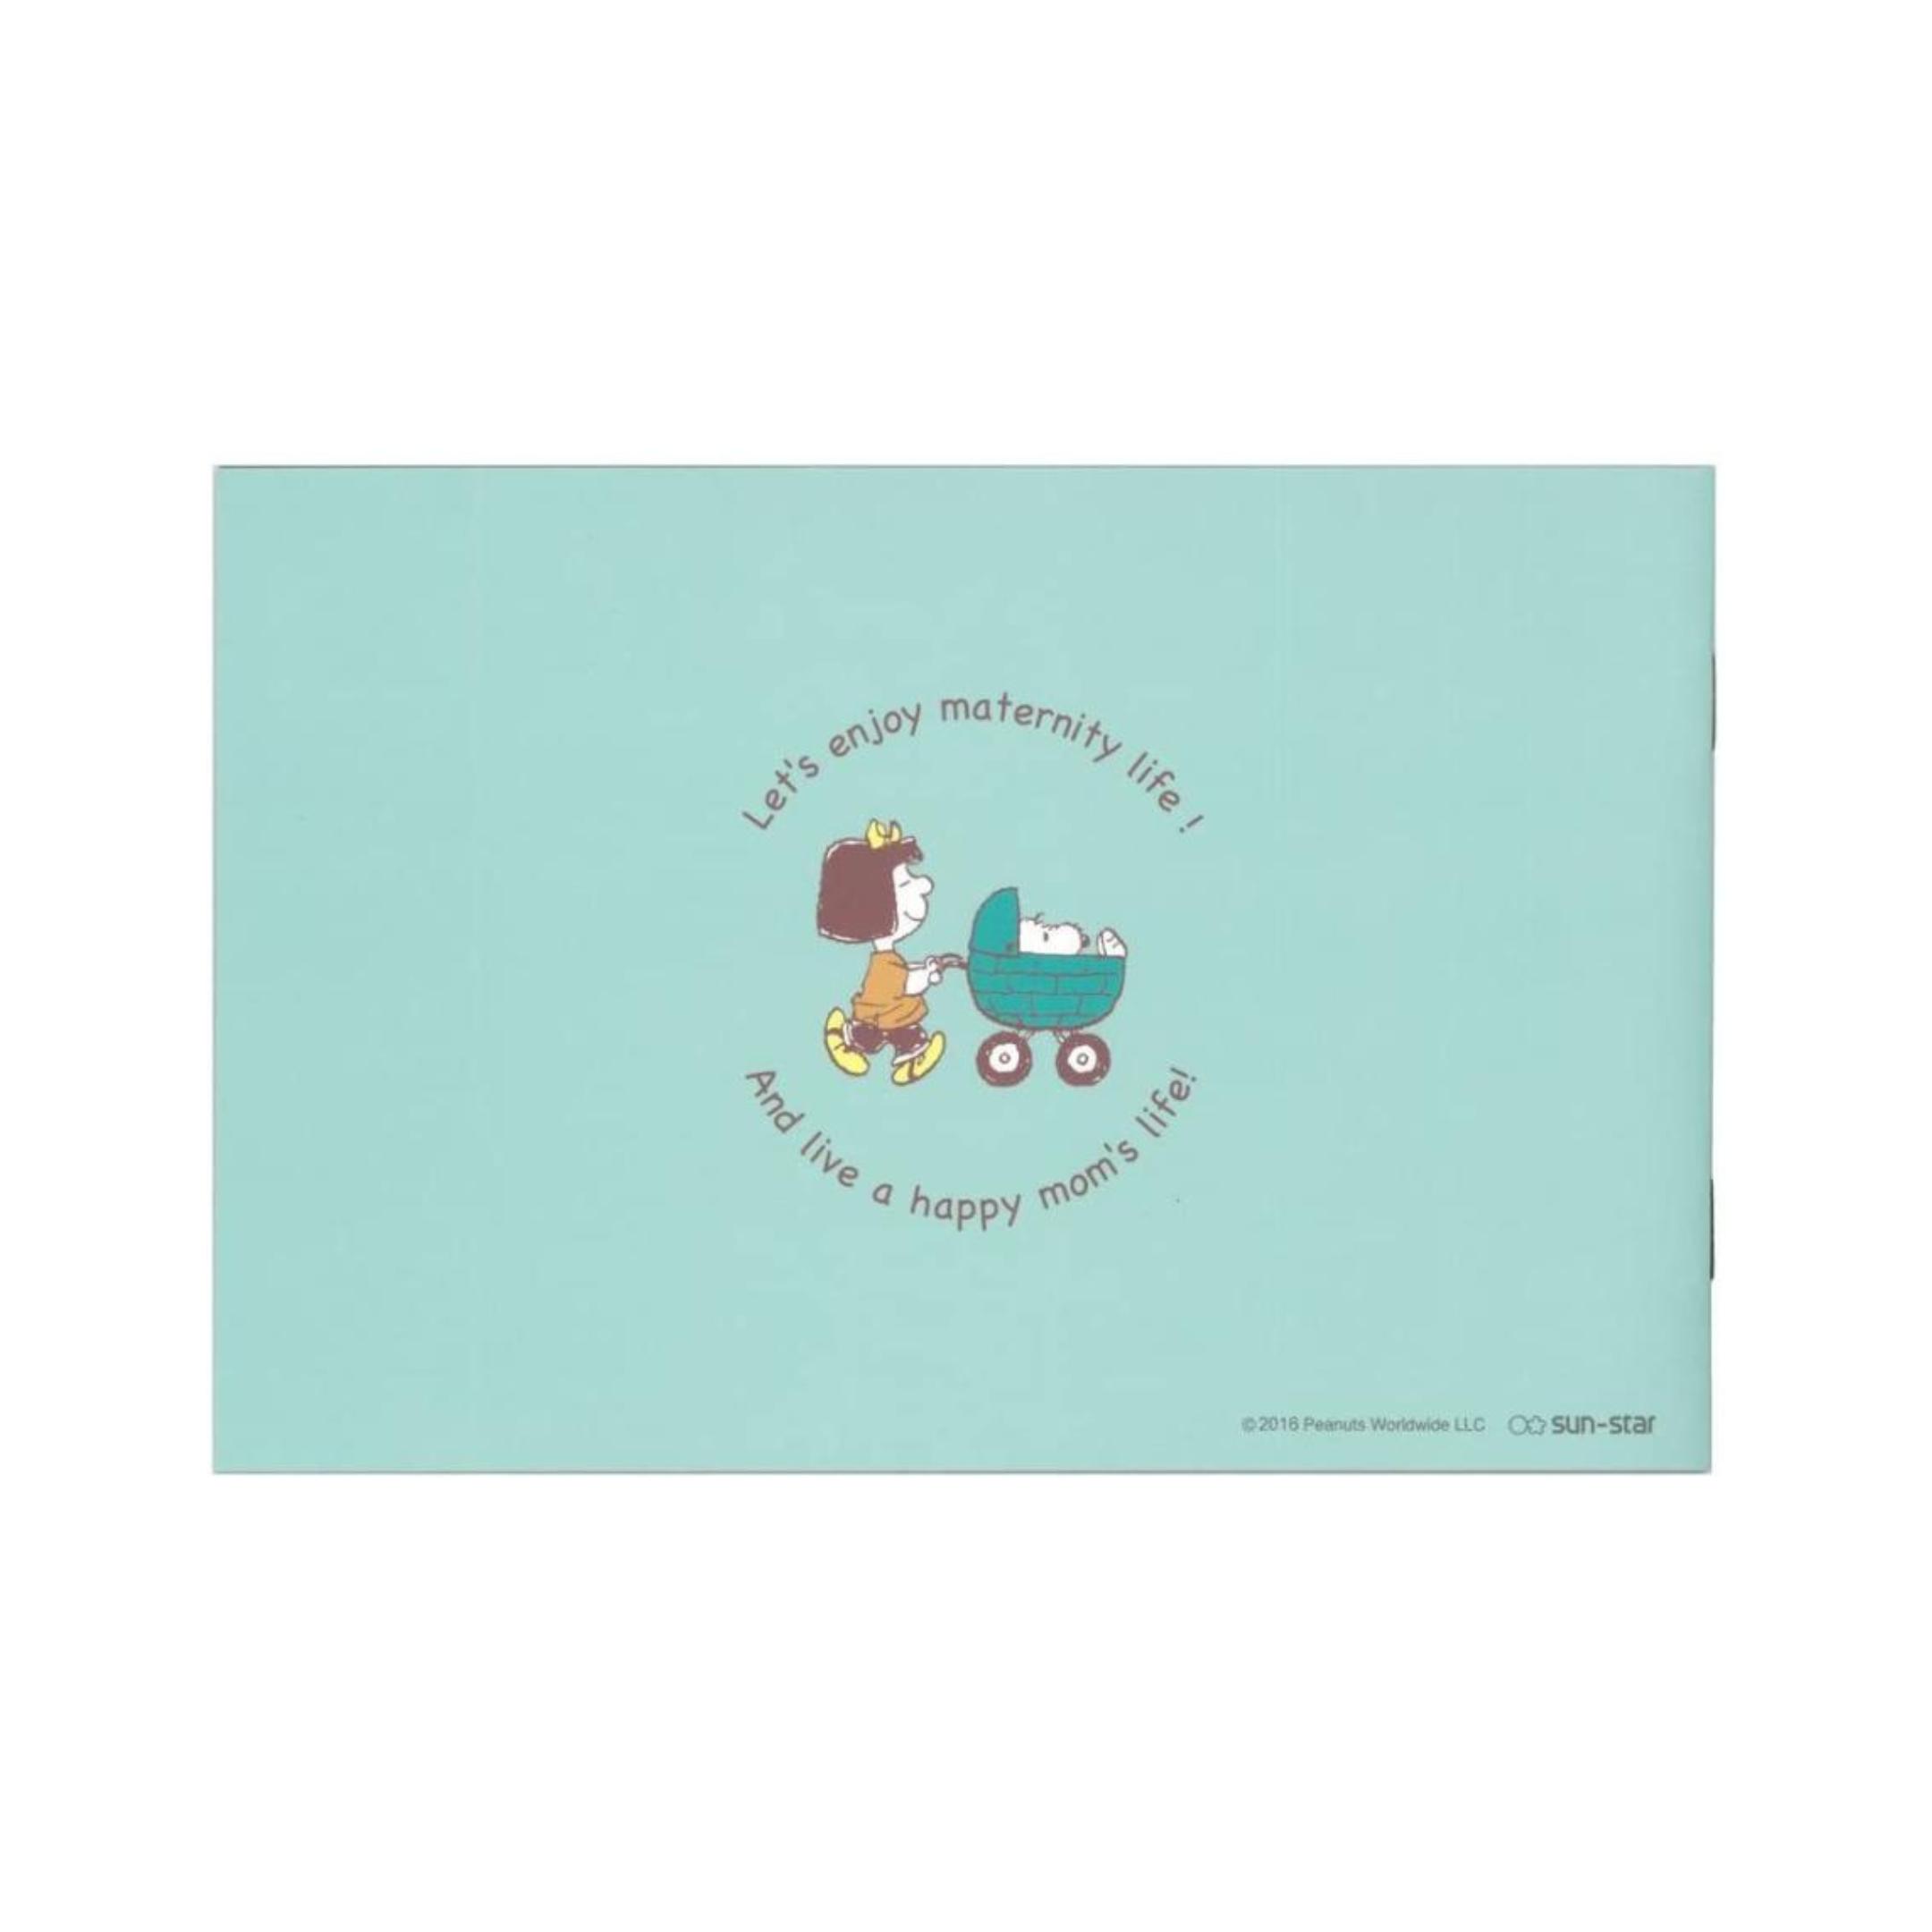  eko - фотография альбом Snoopy альбом eko - фотография сохранение материнство рождение подготовка детский альбом младенец baby бесплатная доставка 